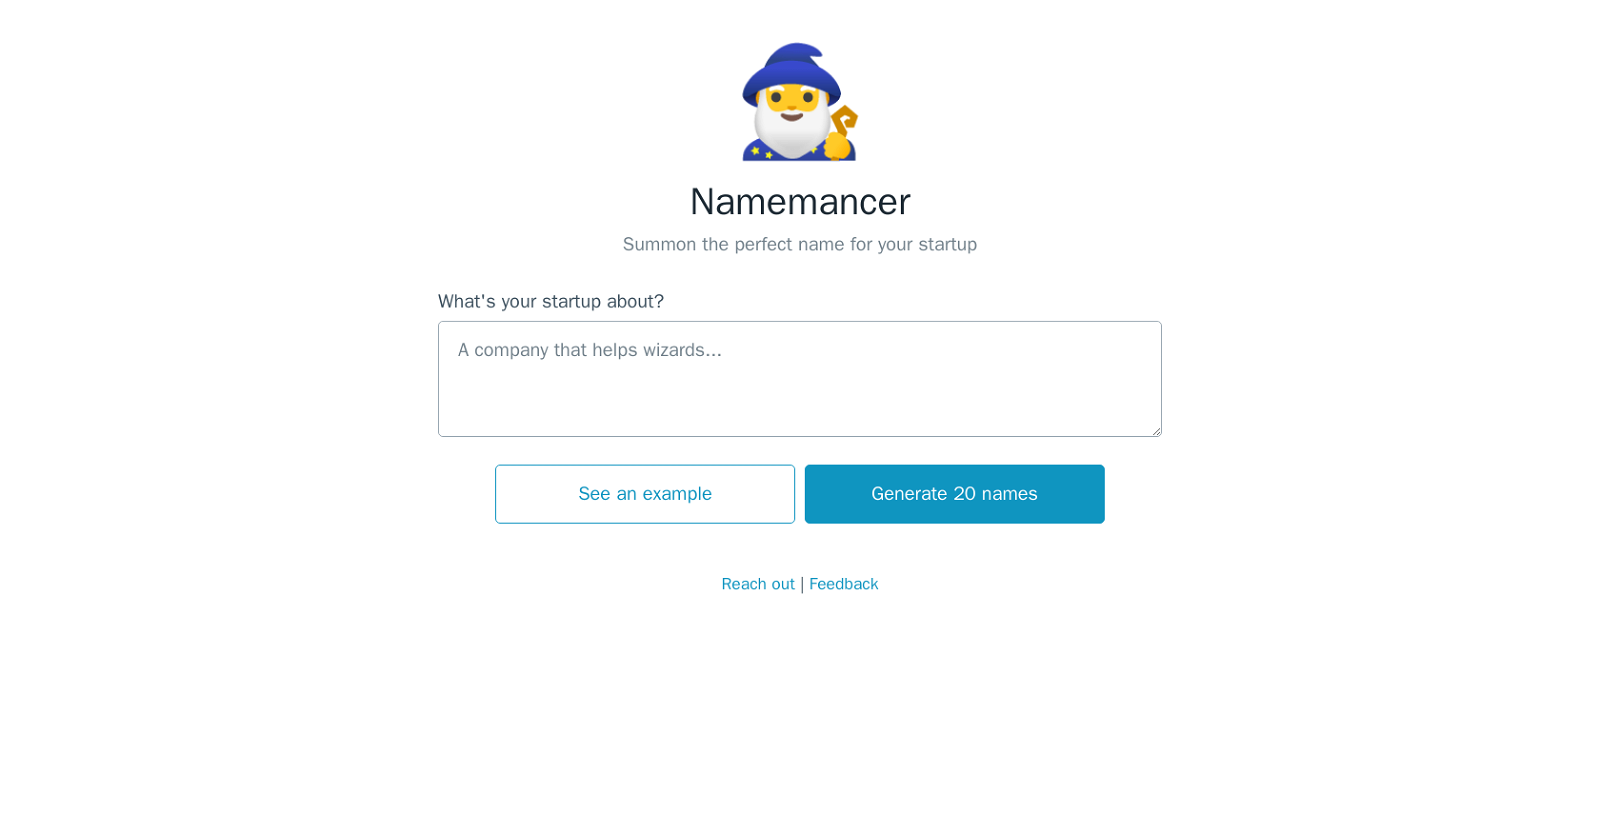 Namemancer